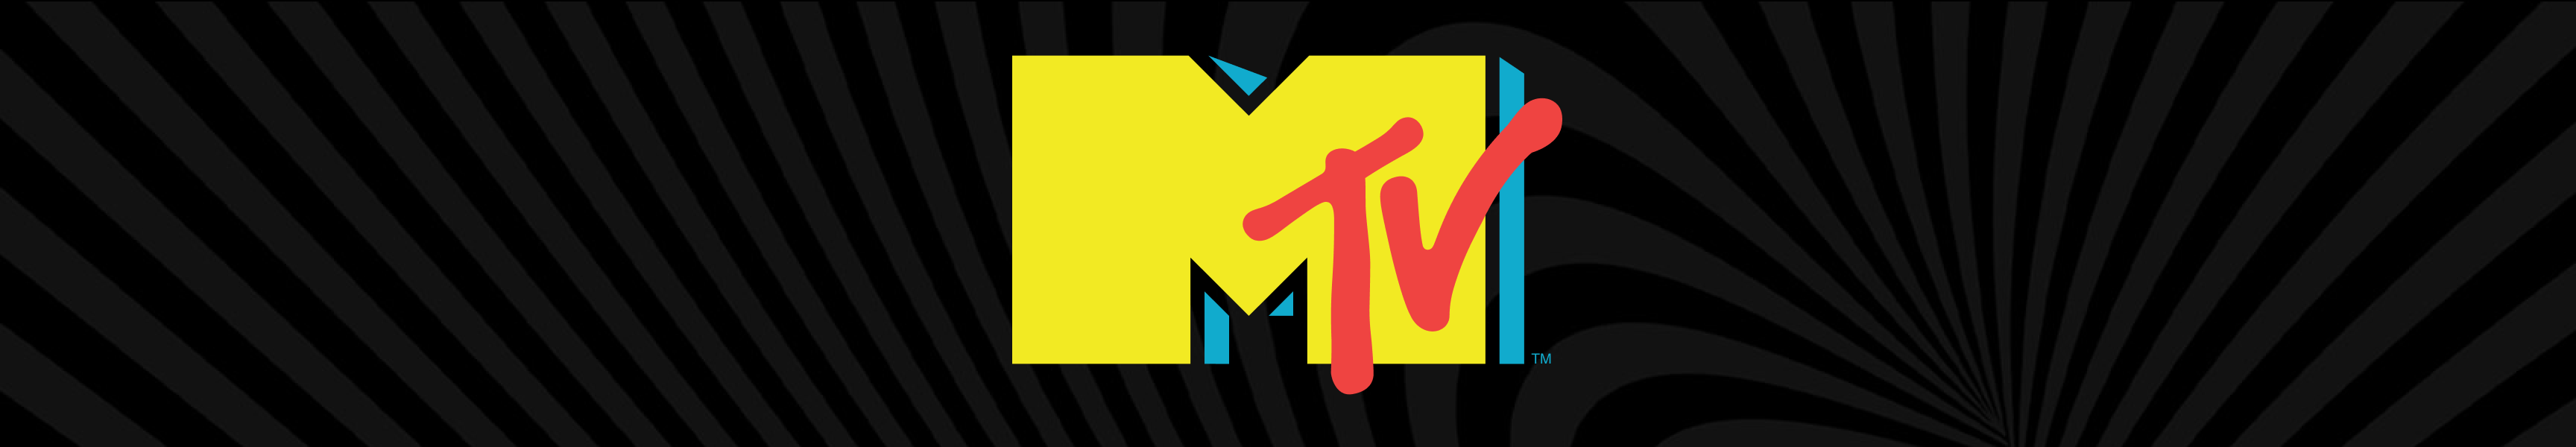 Toallas de MTV